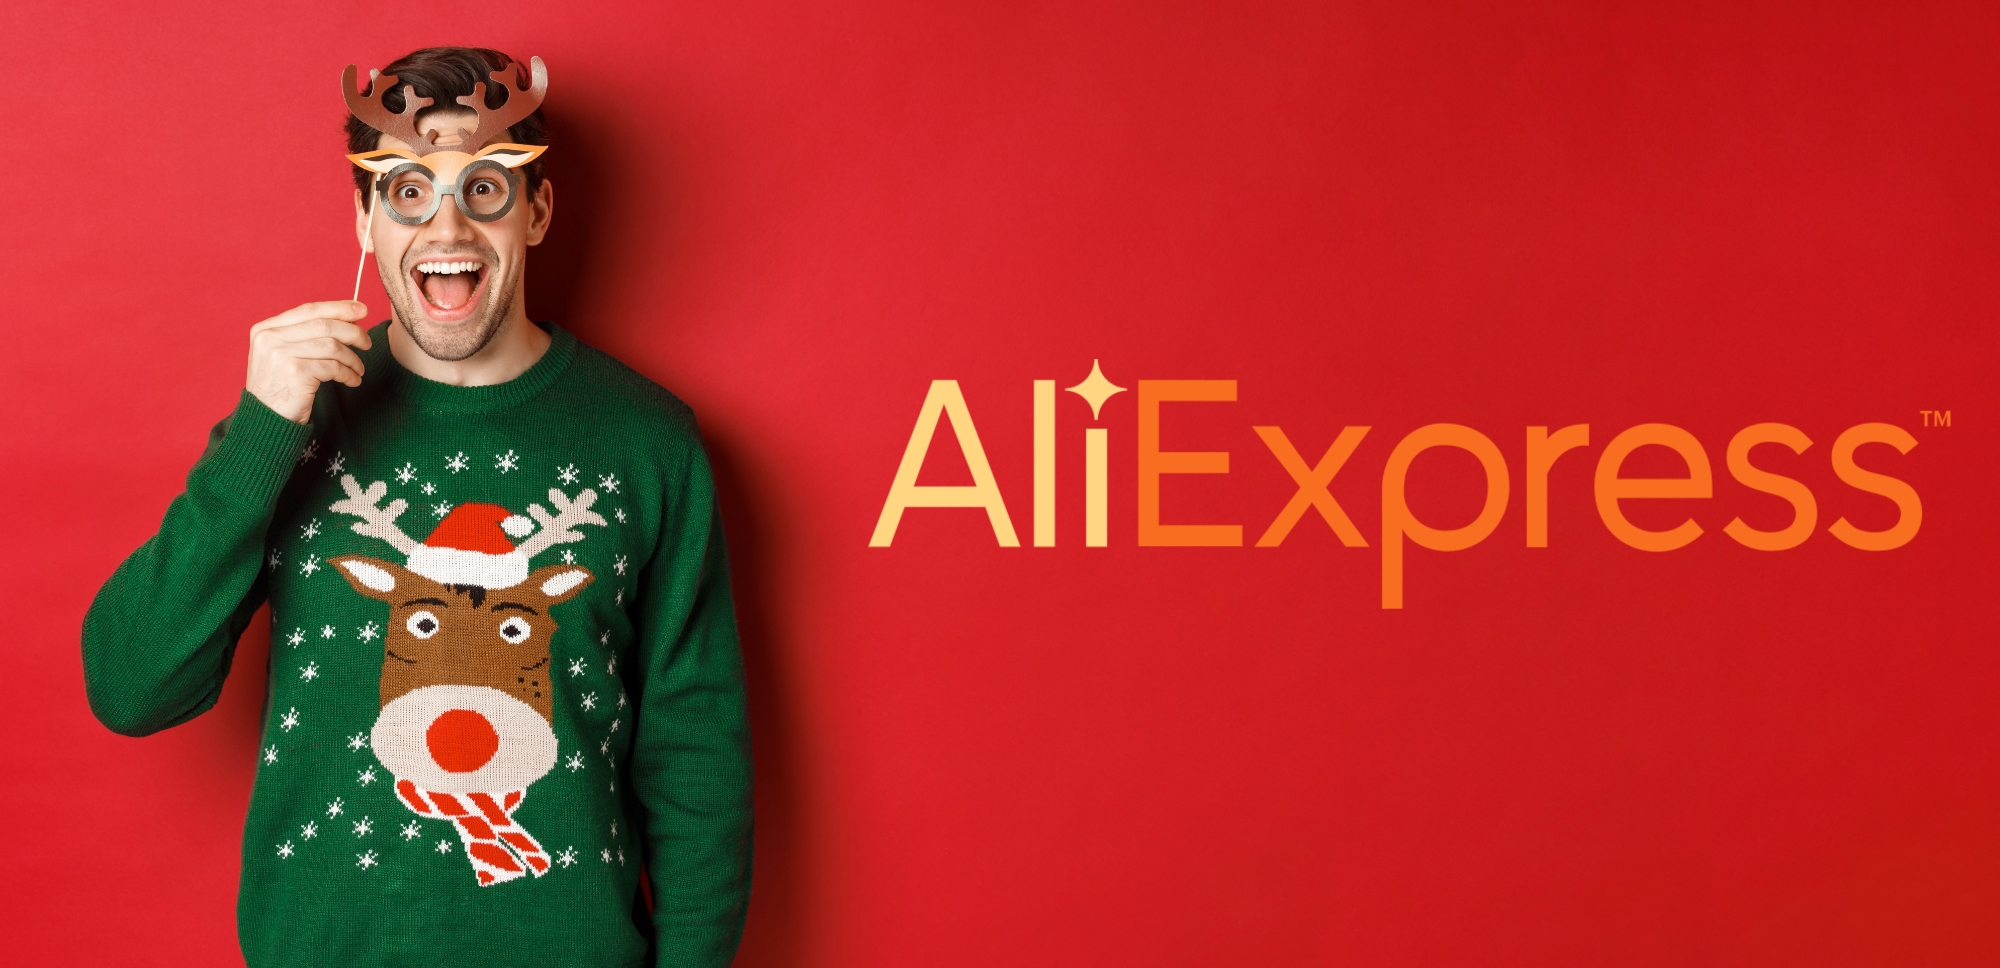 Економія до $25: промокоди для читачів Gagadget на покупки з AliExpress до Нового року